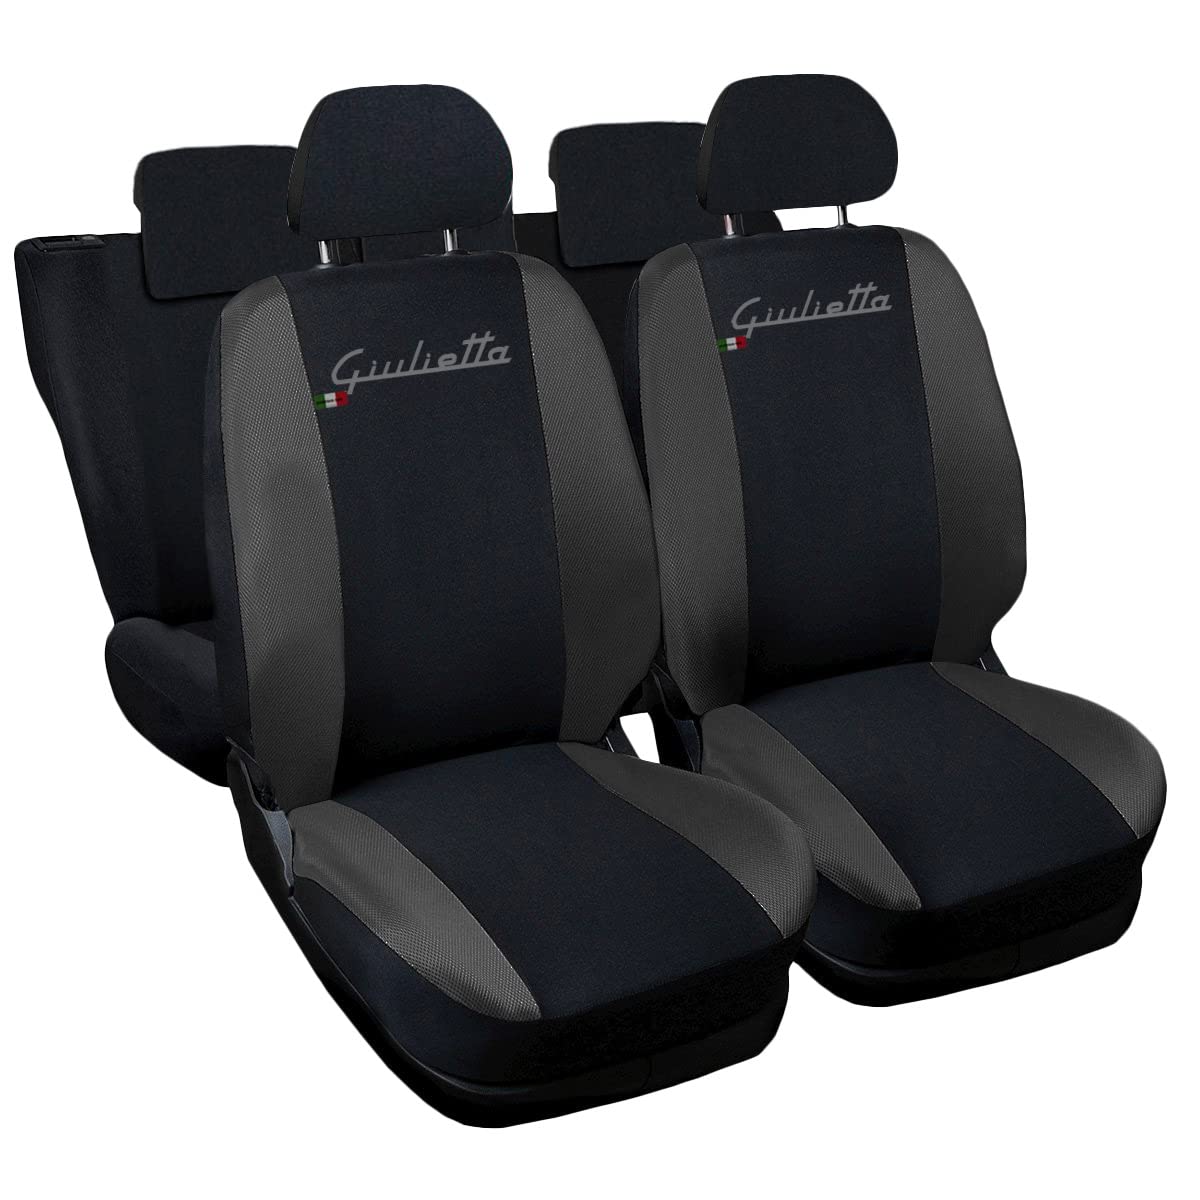 Lupex Shop Autositzbezüge kompatibel mit Giulietta, Made in Italy, Polyestergewebe, kompletter Satz Vorder- und Rücksitze (Schwarz - Dunkelgrau) von Lupex Shop